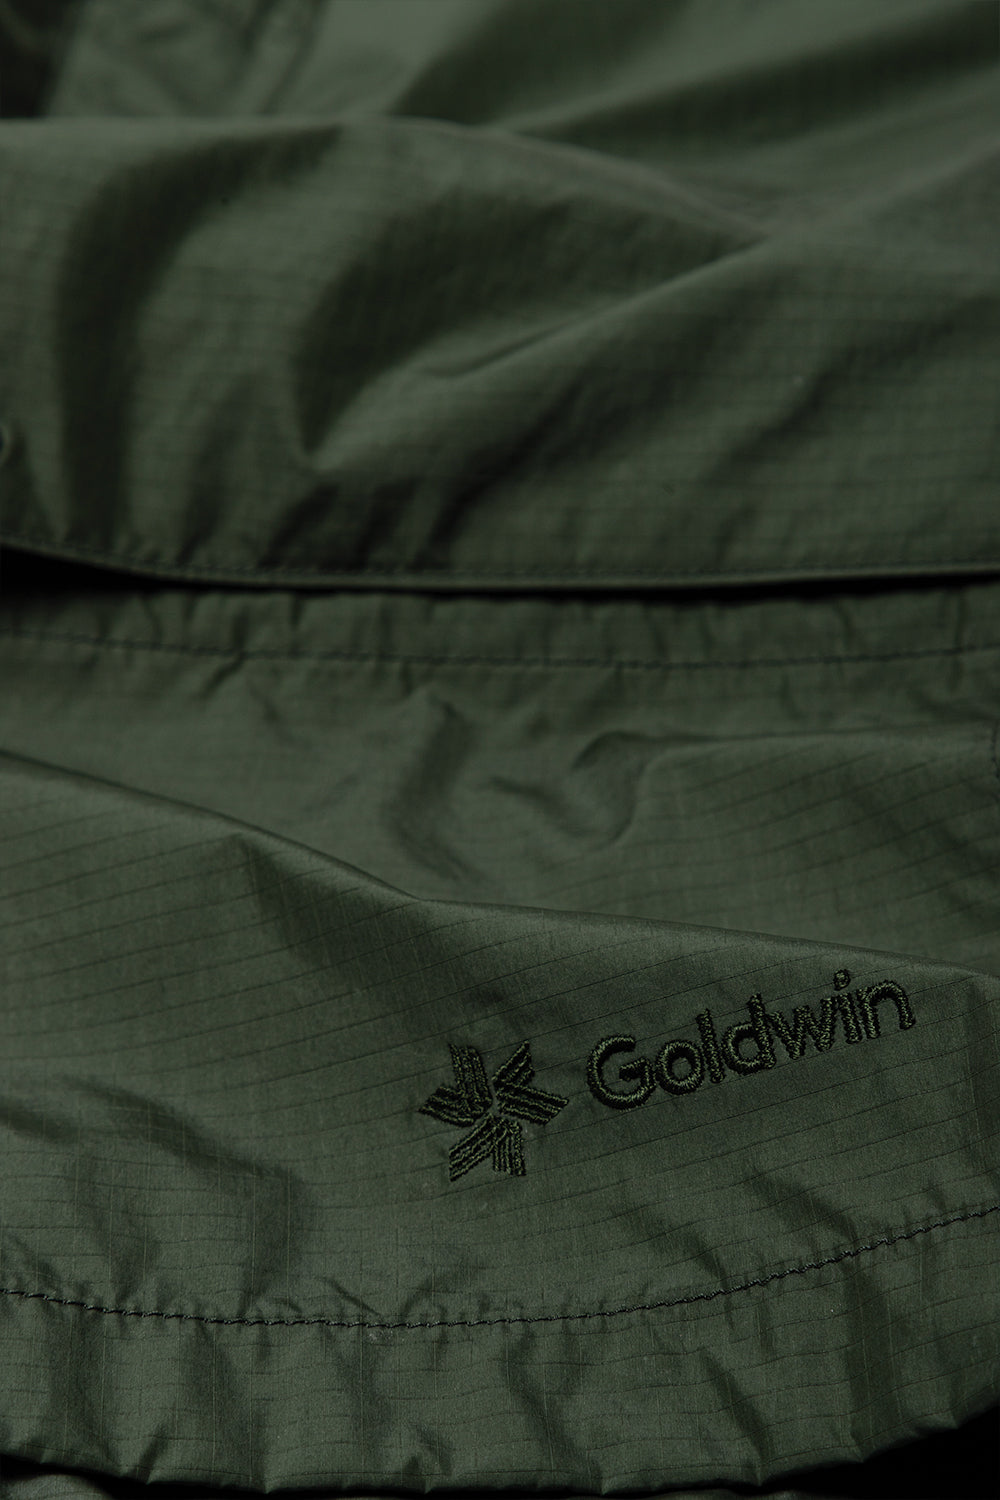 goldwin-element-mount-cargo-shorts-khaki-green